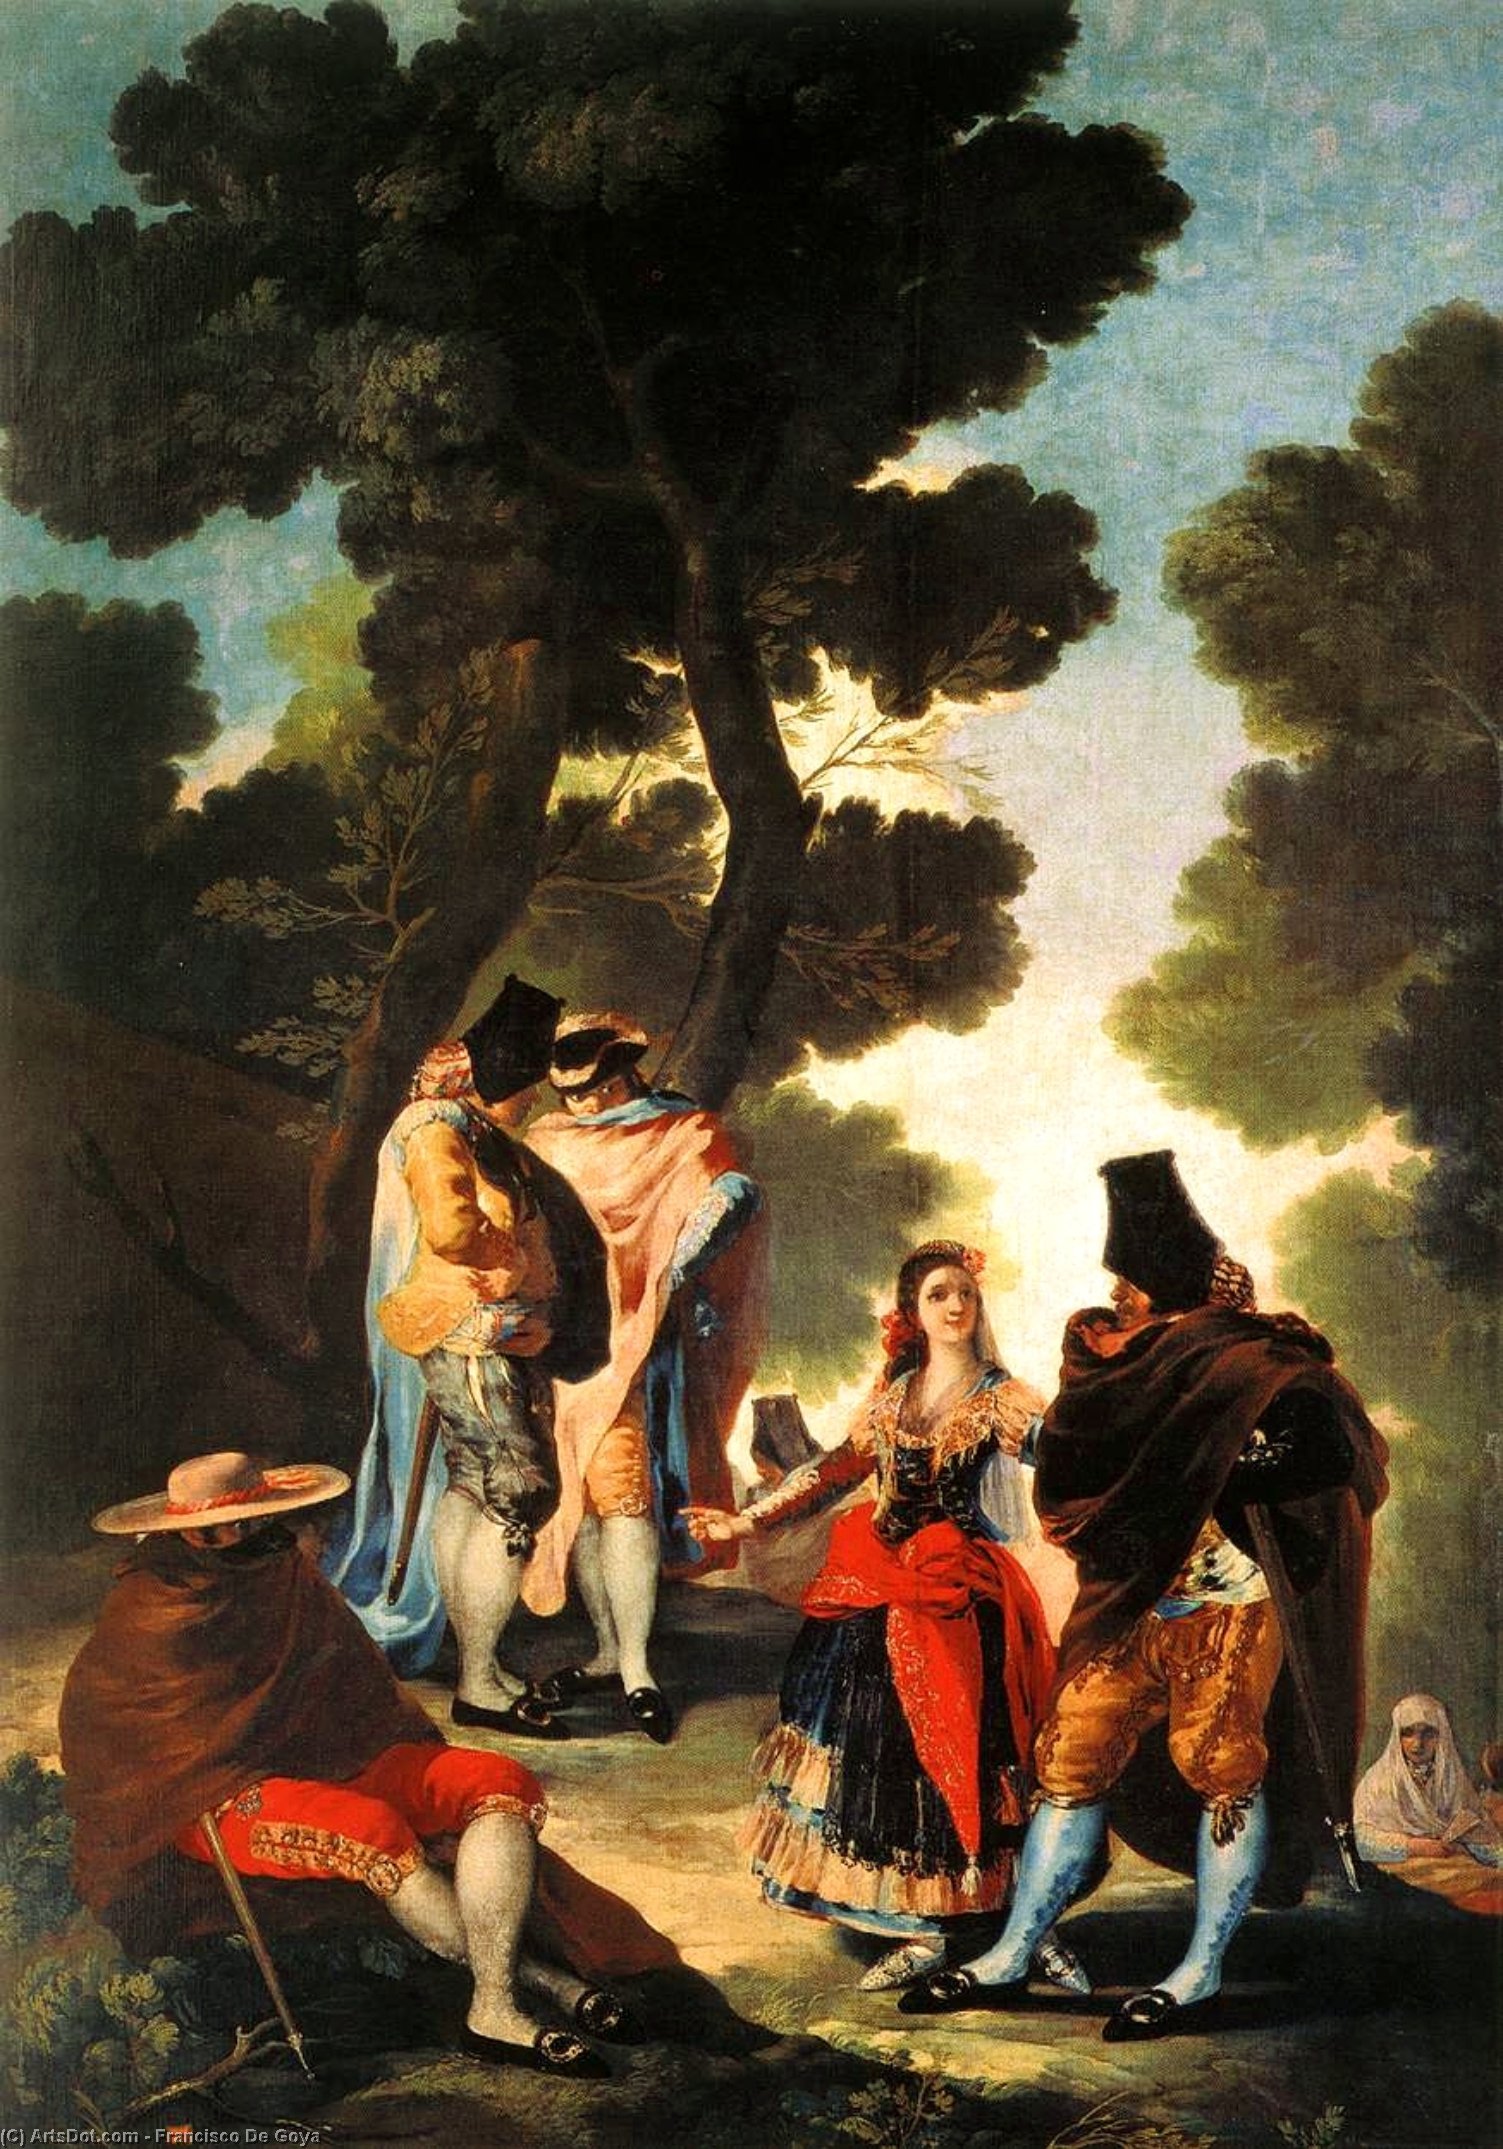 WikiOO.org - Encyclopedia of Fine Arts - Maleri, Artwork Francisco De Goya - La maja y los embozados